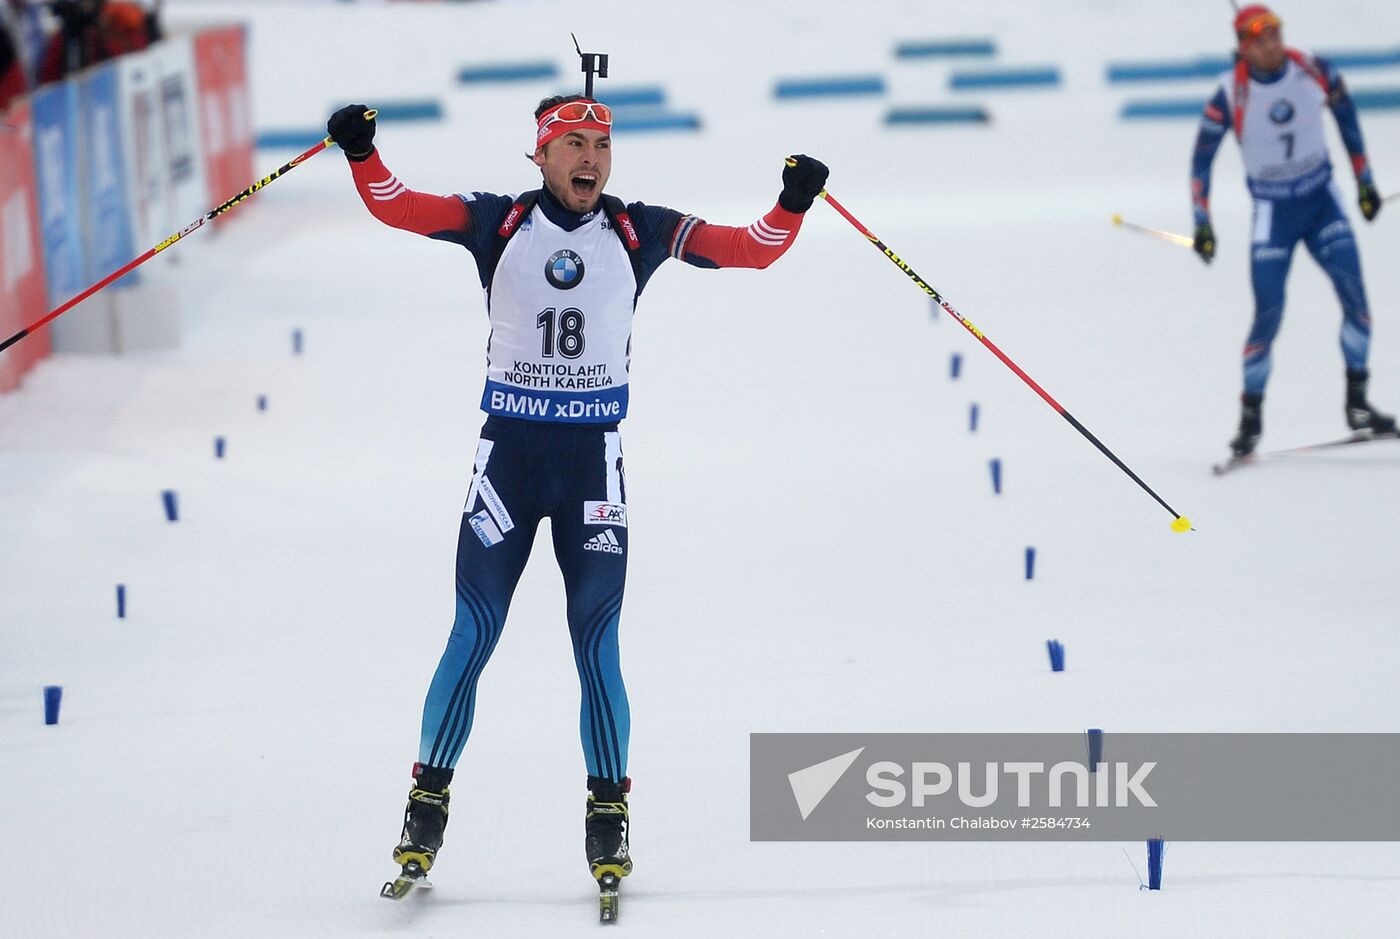 Biathlon World Championships 2015 – Men's pursuit